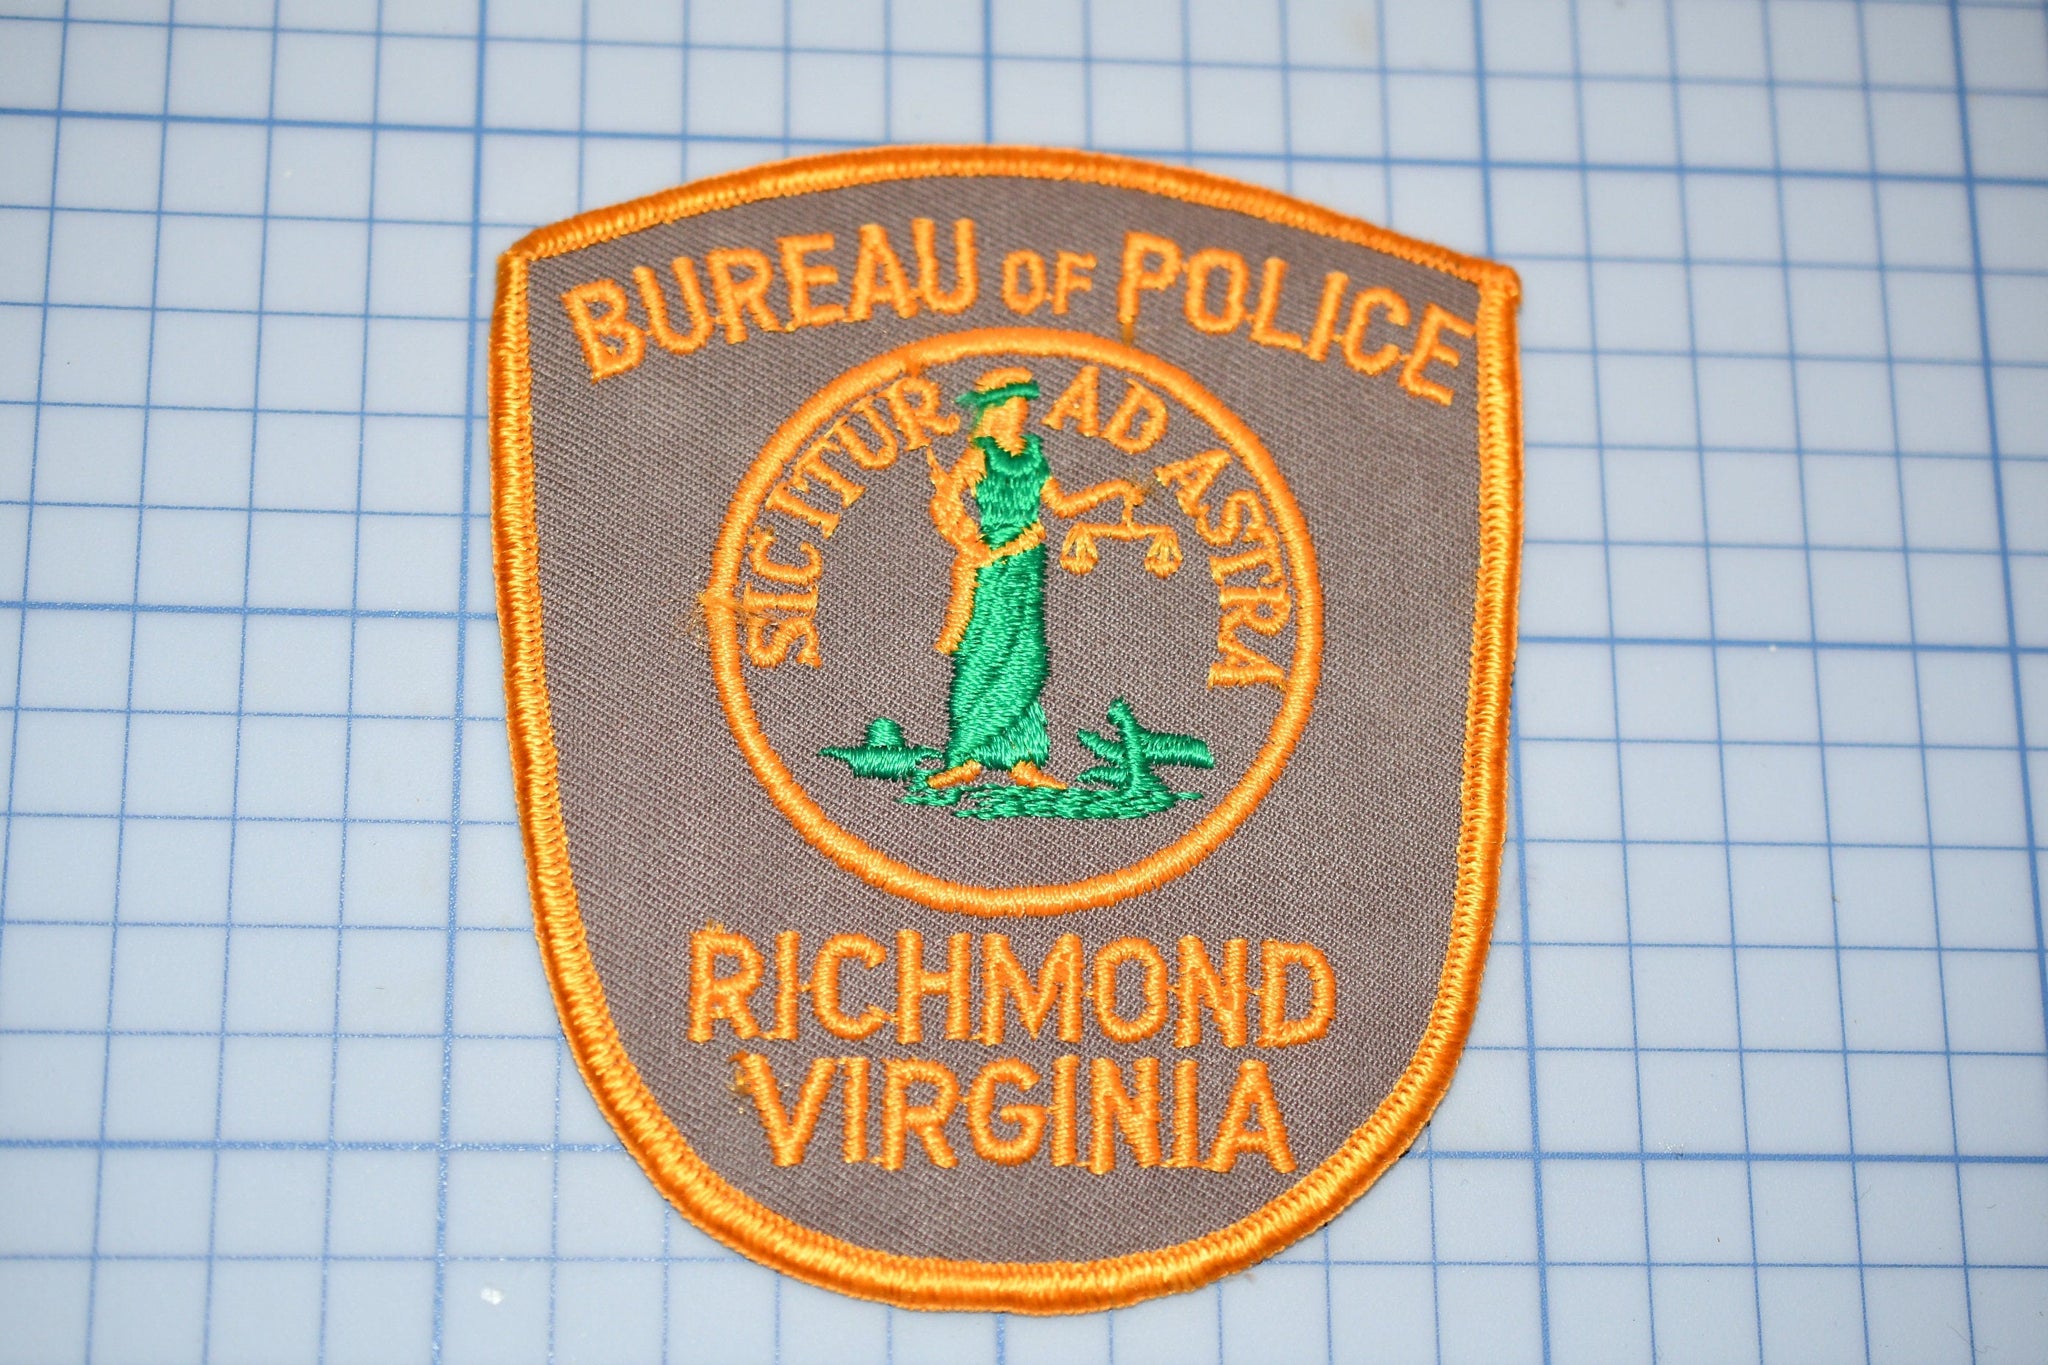 Bureau Of Police Richmond Virginia Patch (S4-296)